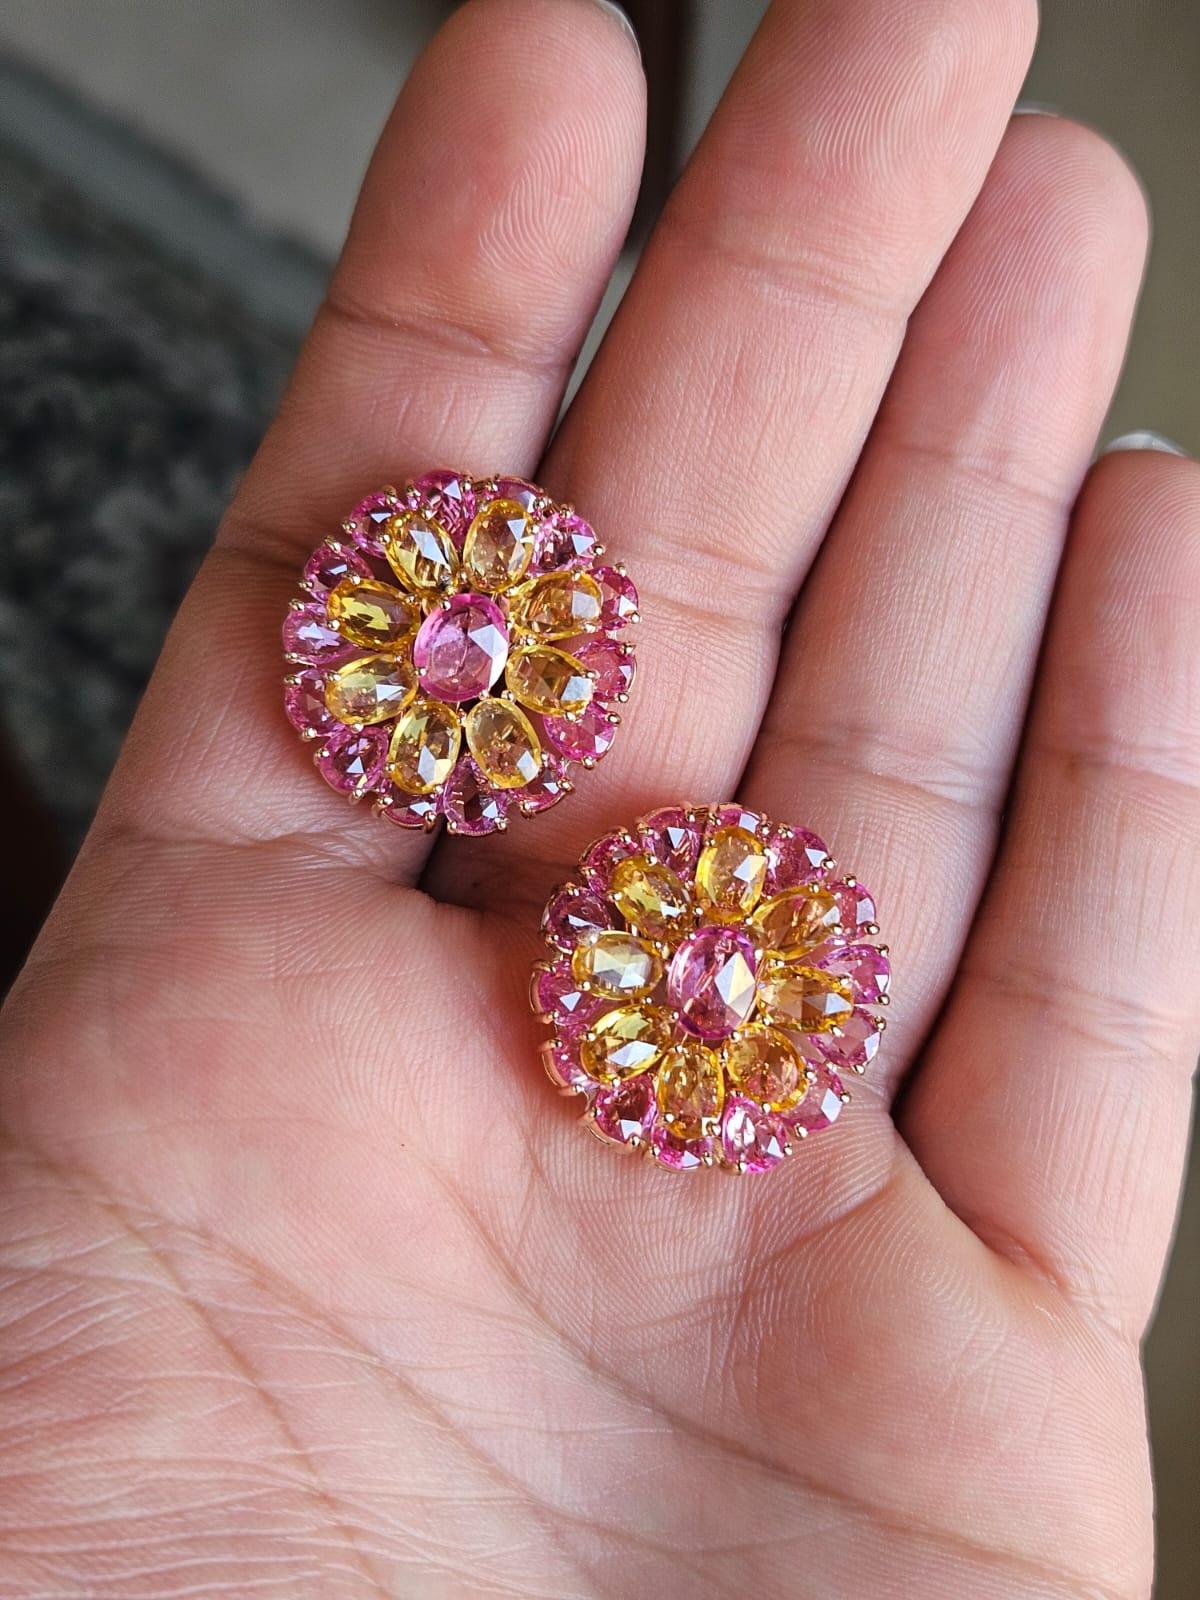 Des boucles d'oreilles en saphir jaune et saphir rose en or rose 18 carats. Le poids des saphirs jaunes est de 7,28 carats. Les saphirs jaunes sont originaires de Ceylan (Sri Lanka). Le poids des saphirs roses est de 9.65 carats. Les saphirs roses